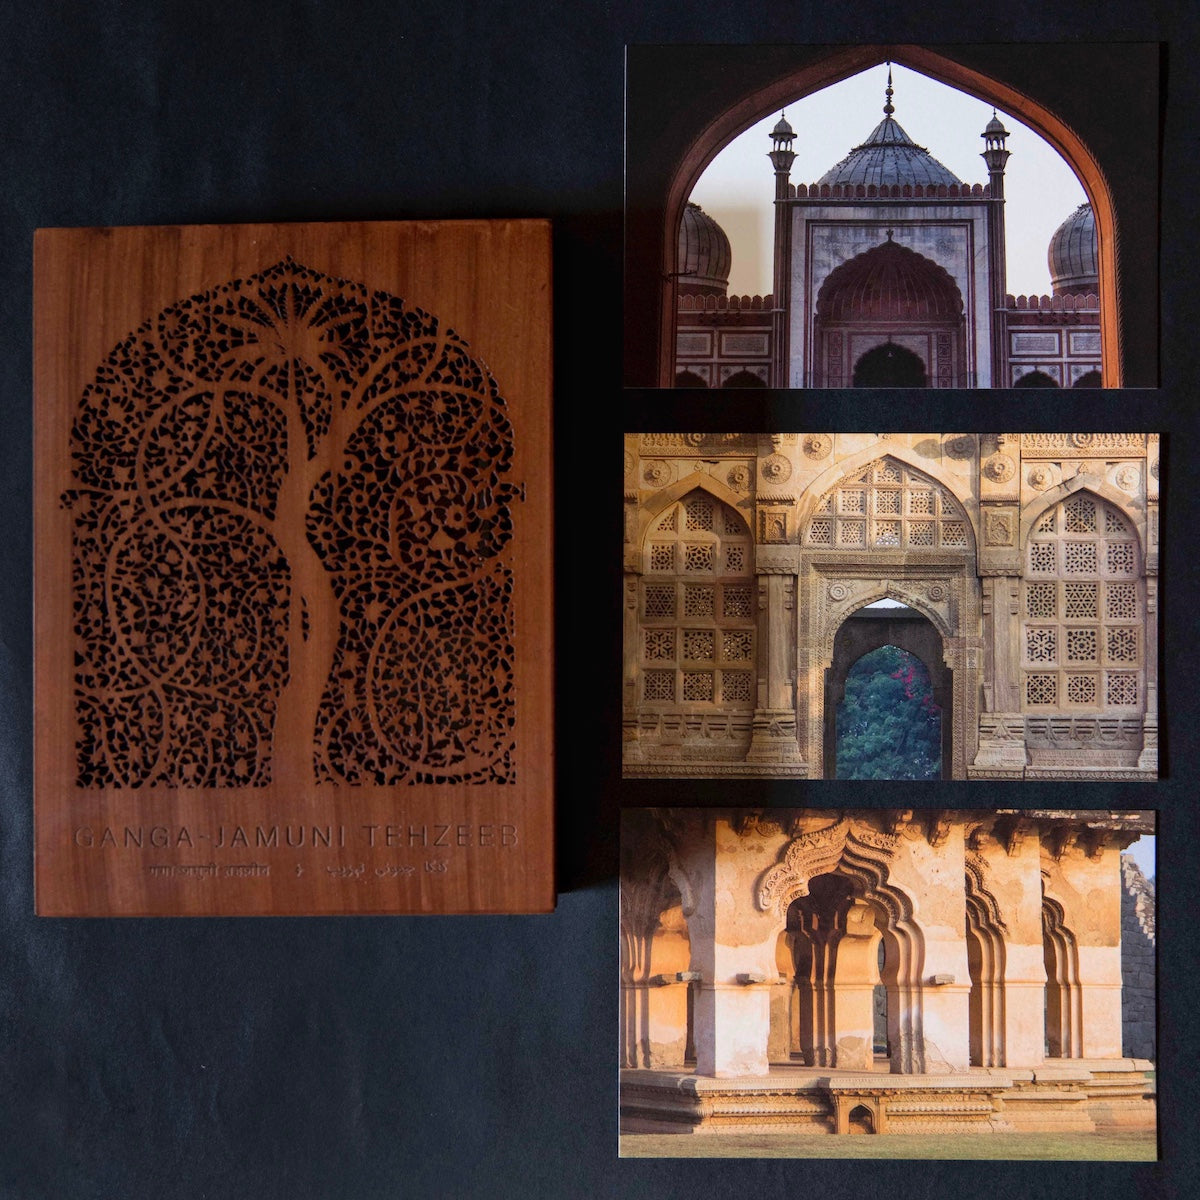 Ganga-Jamuni Tehzeeb Mini Print Box Set by Aaran Patel